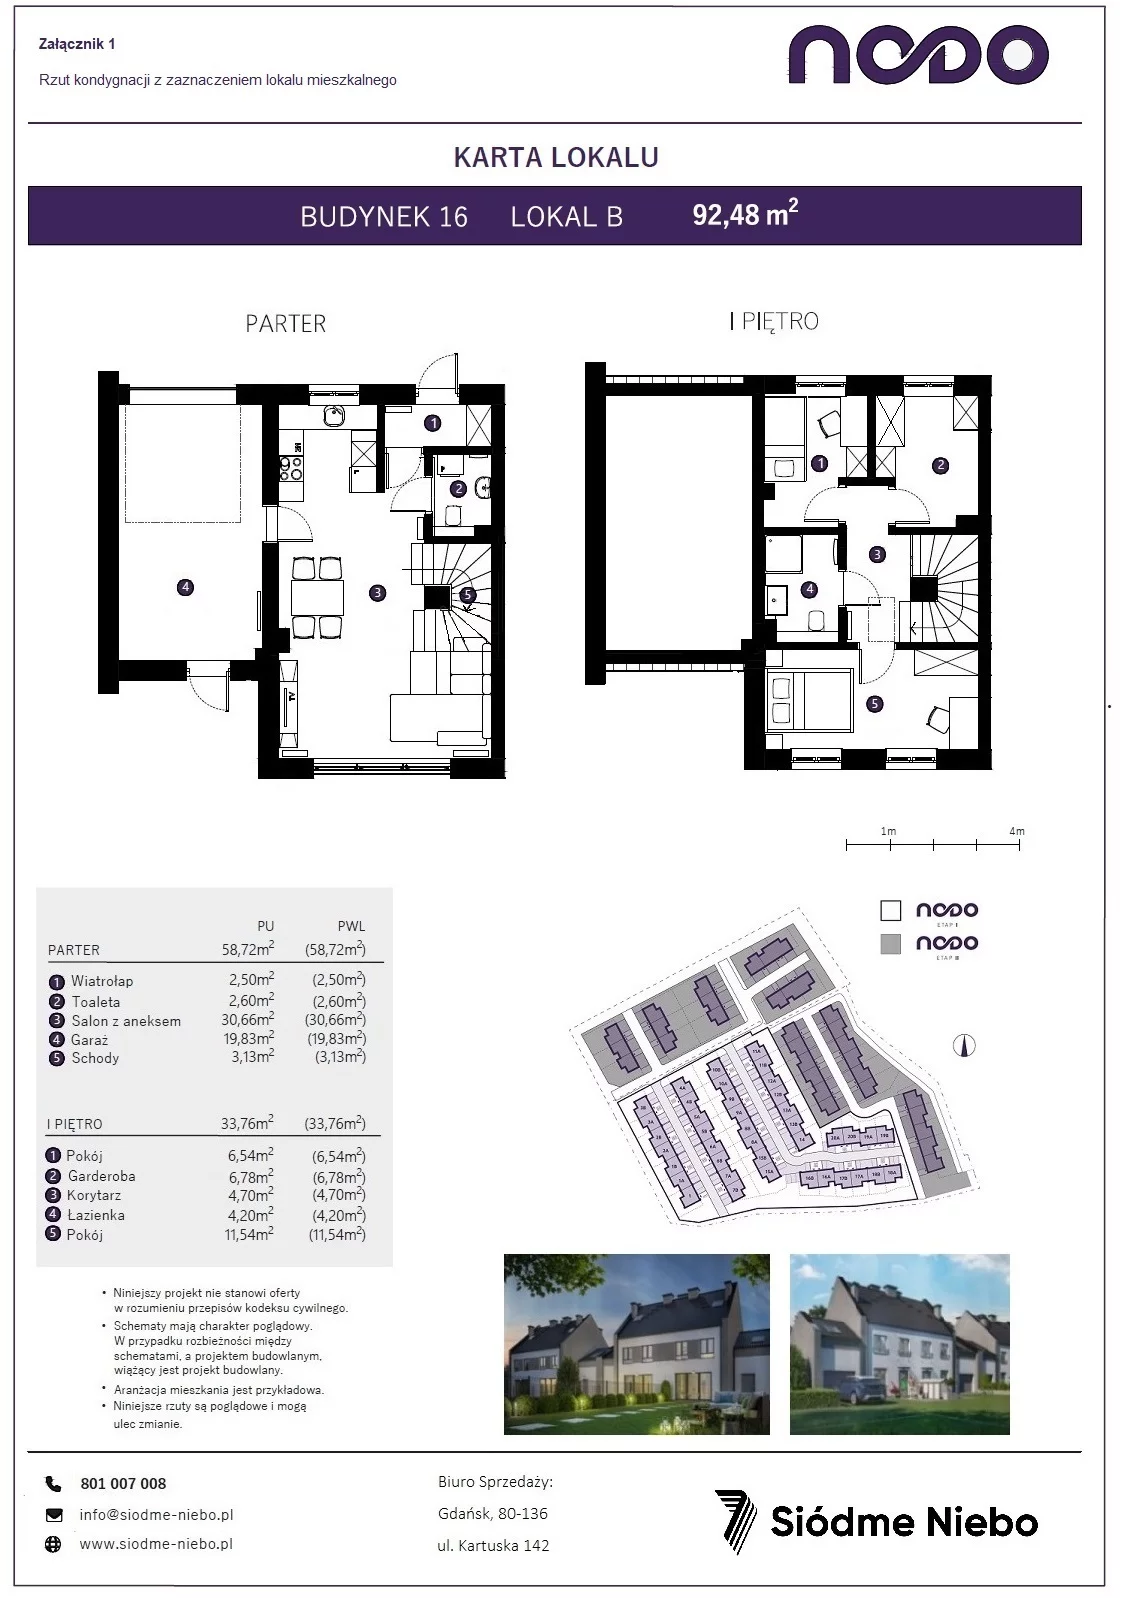 Mieszkanie 92,48 m², parter, oferta nr 16B, Osiedle Nodo, Gdańsk, Jasień, ul. Lubowidzka